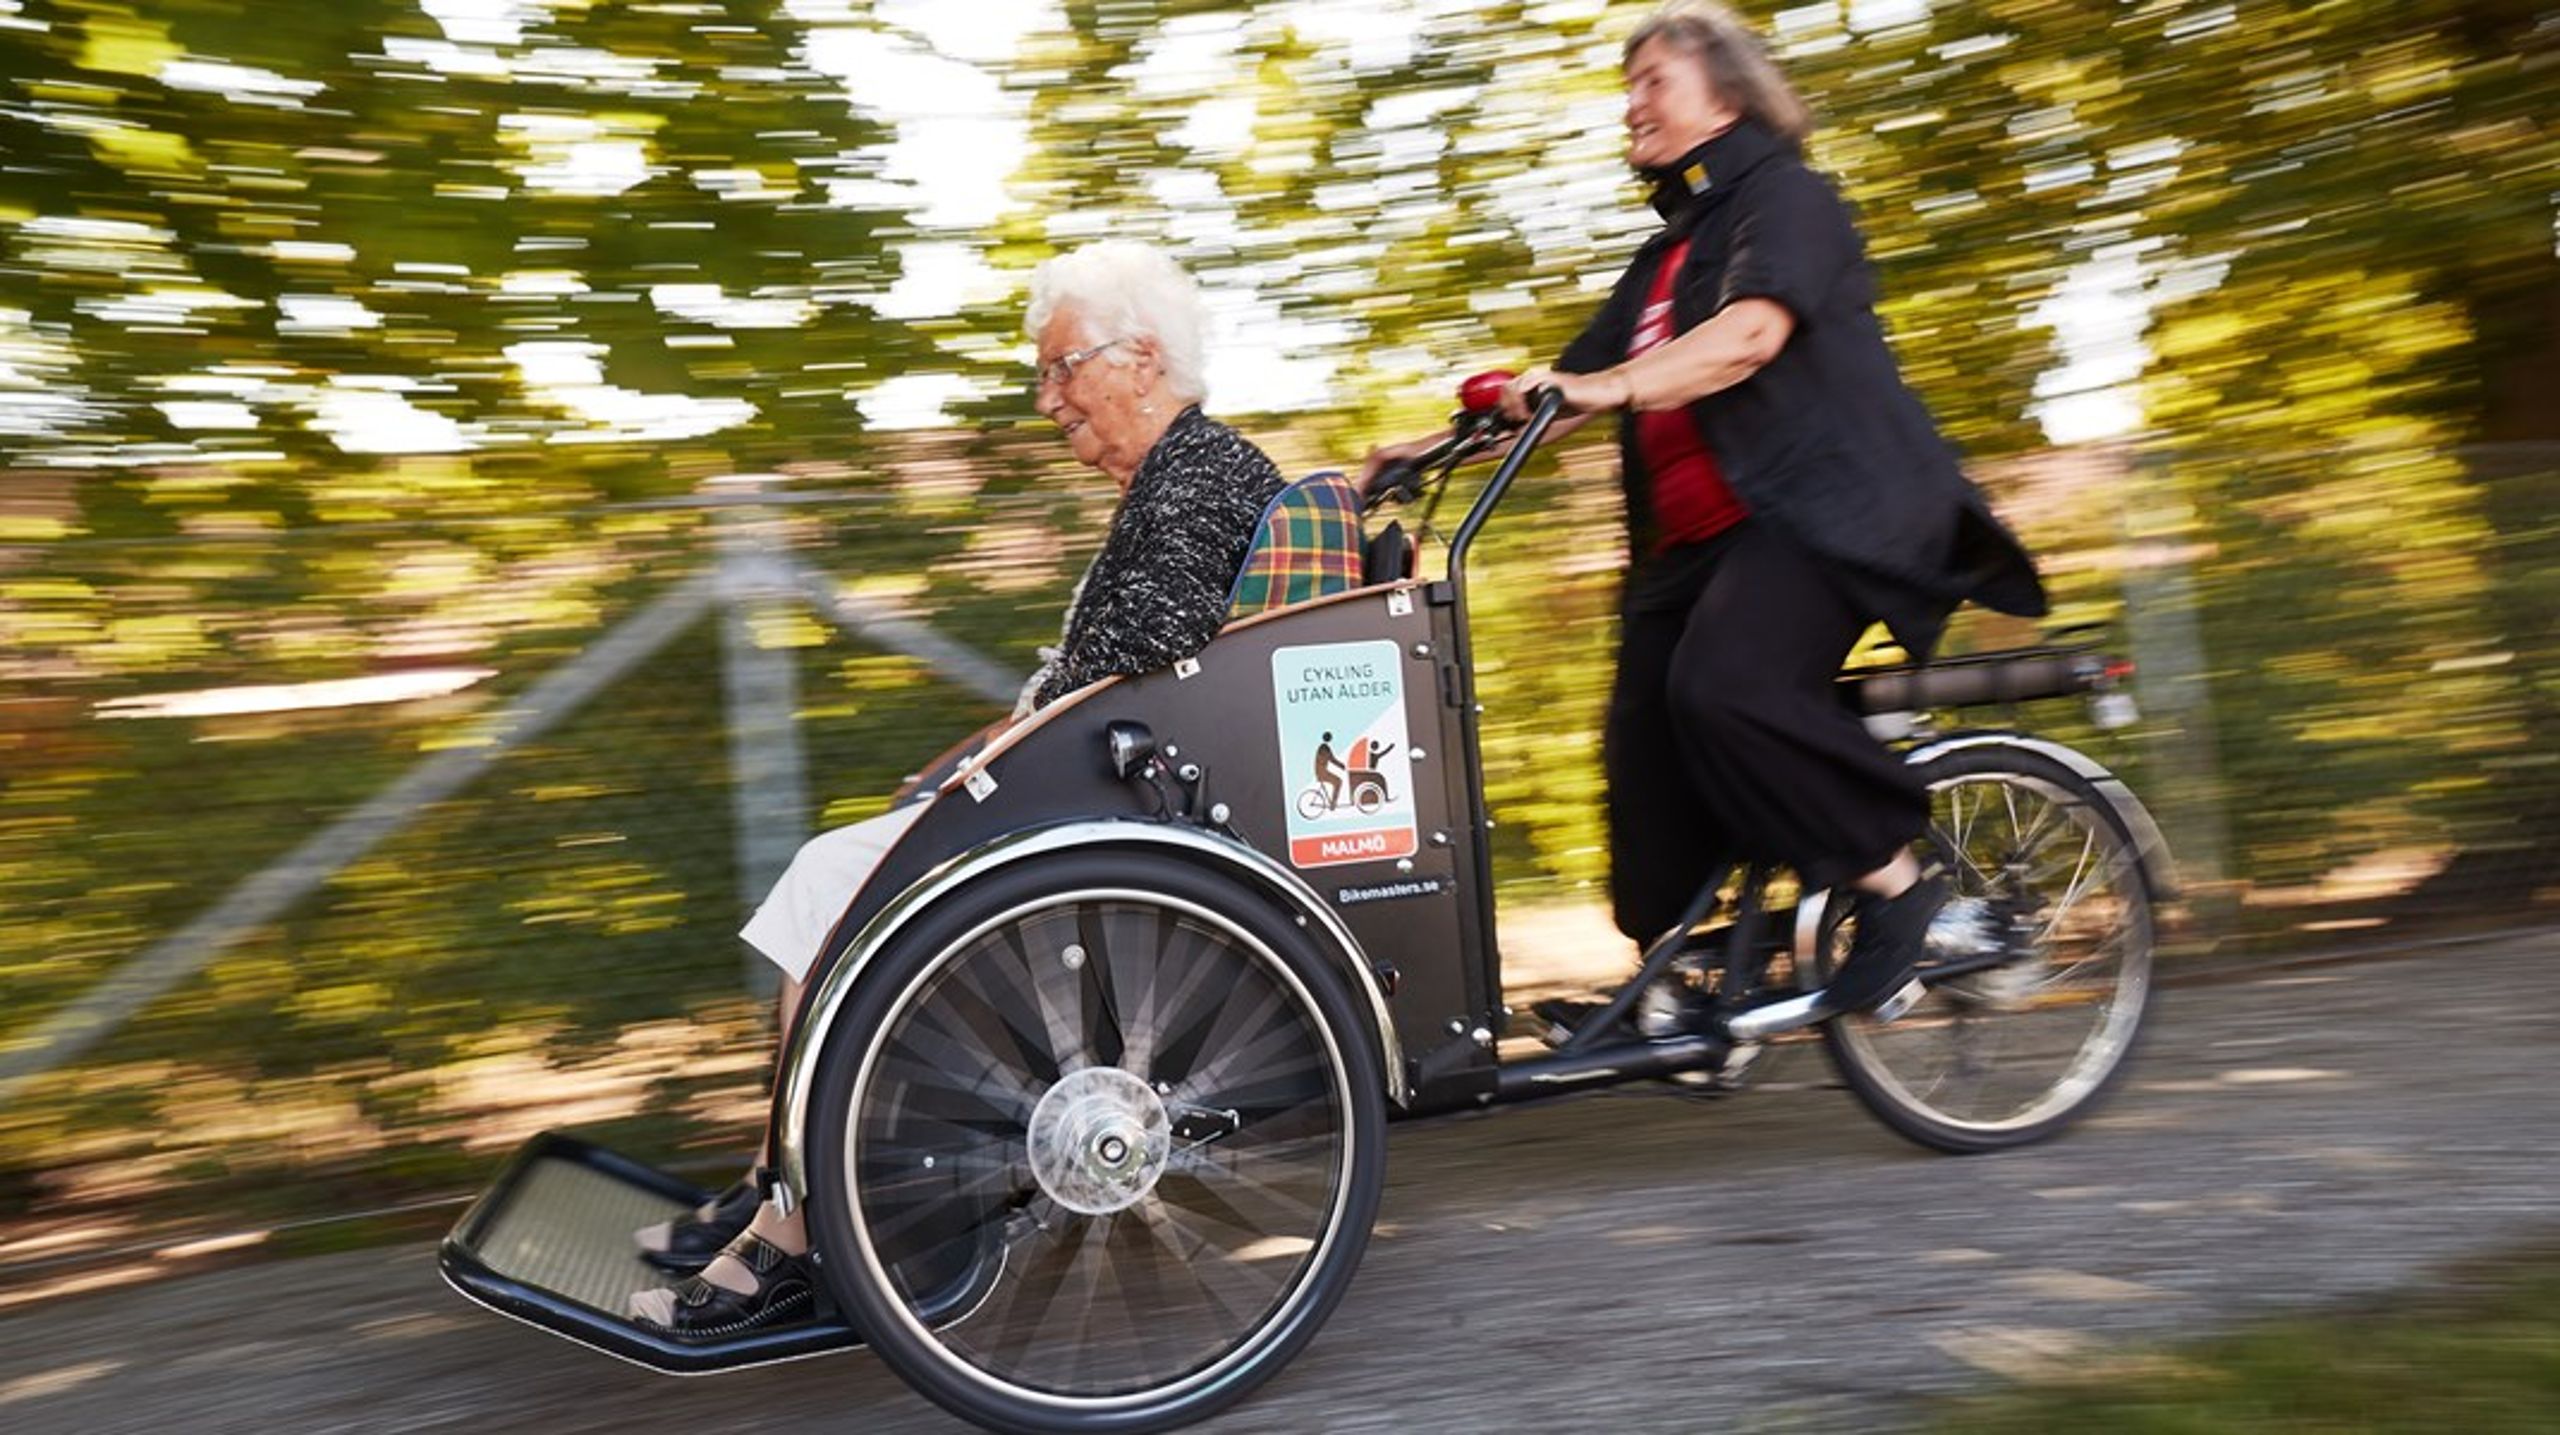 Vägen framåt. När samhället sakta öppnar igen så vill det civila samhället bidra mer. Cykla utan ålder är ett initiativ i Malmö där ideella cykelpiloter samarbetar med äldreboenden och låter de boende komma ut på cykeltur. (Arkivbild)&nbsp;&nbsp;&nbsp;